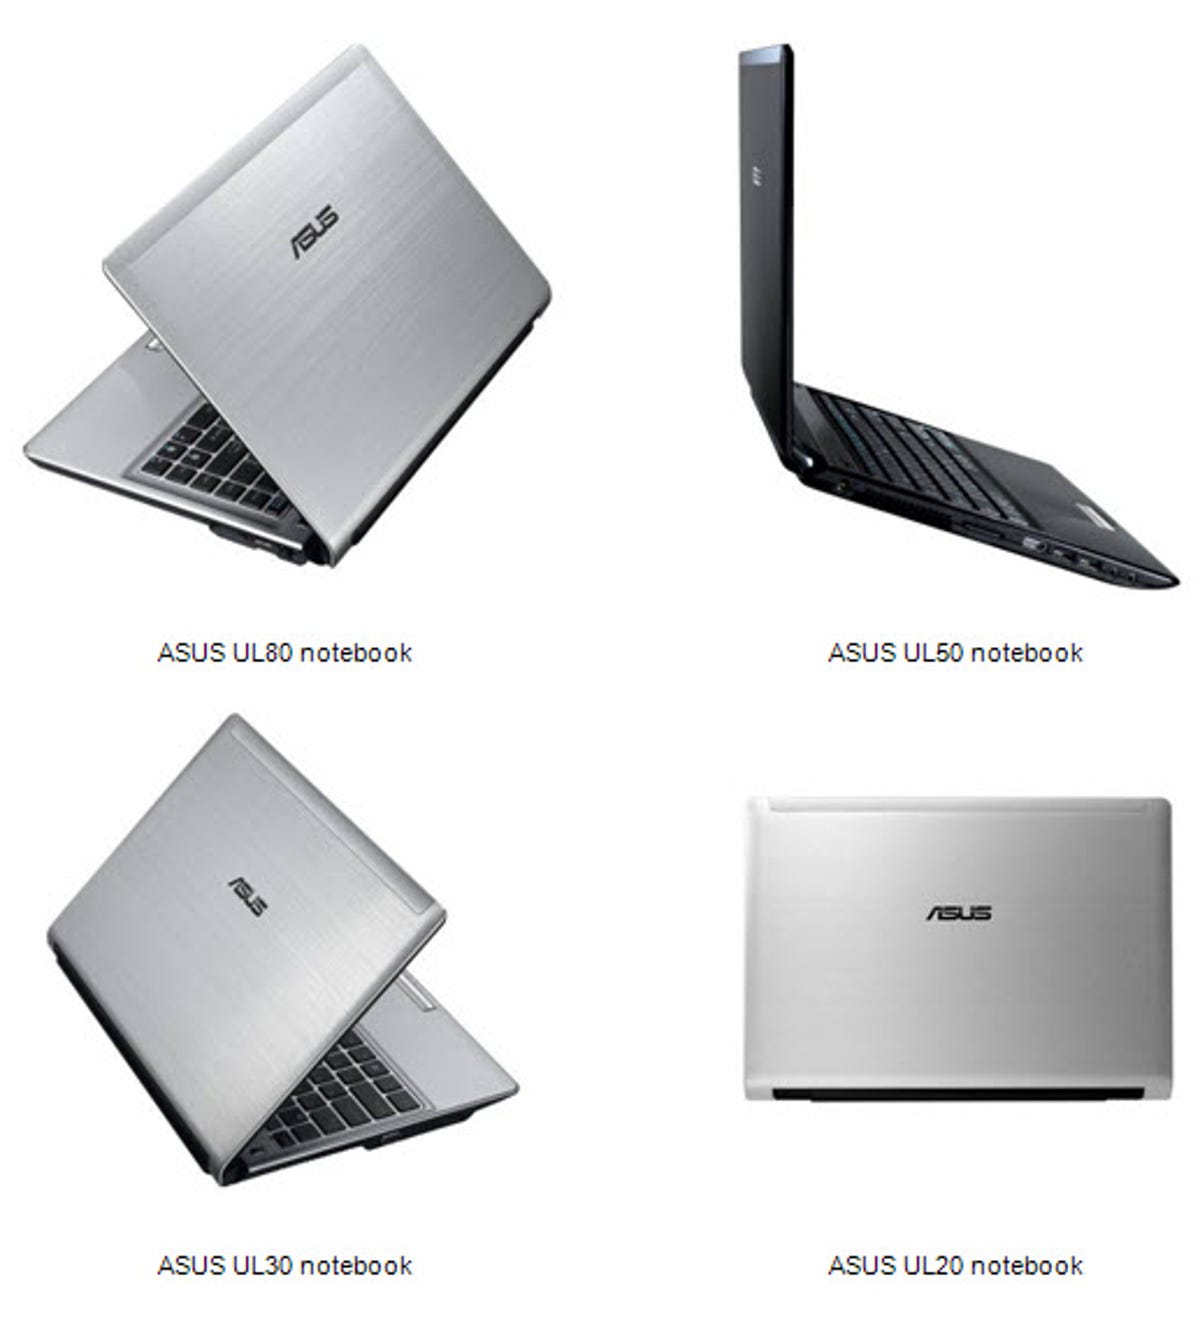 Asustek's new line of thin, light laptops